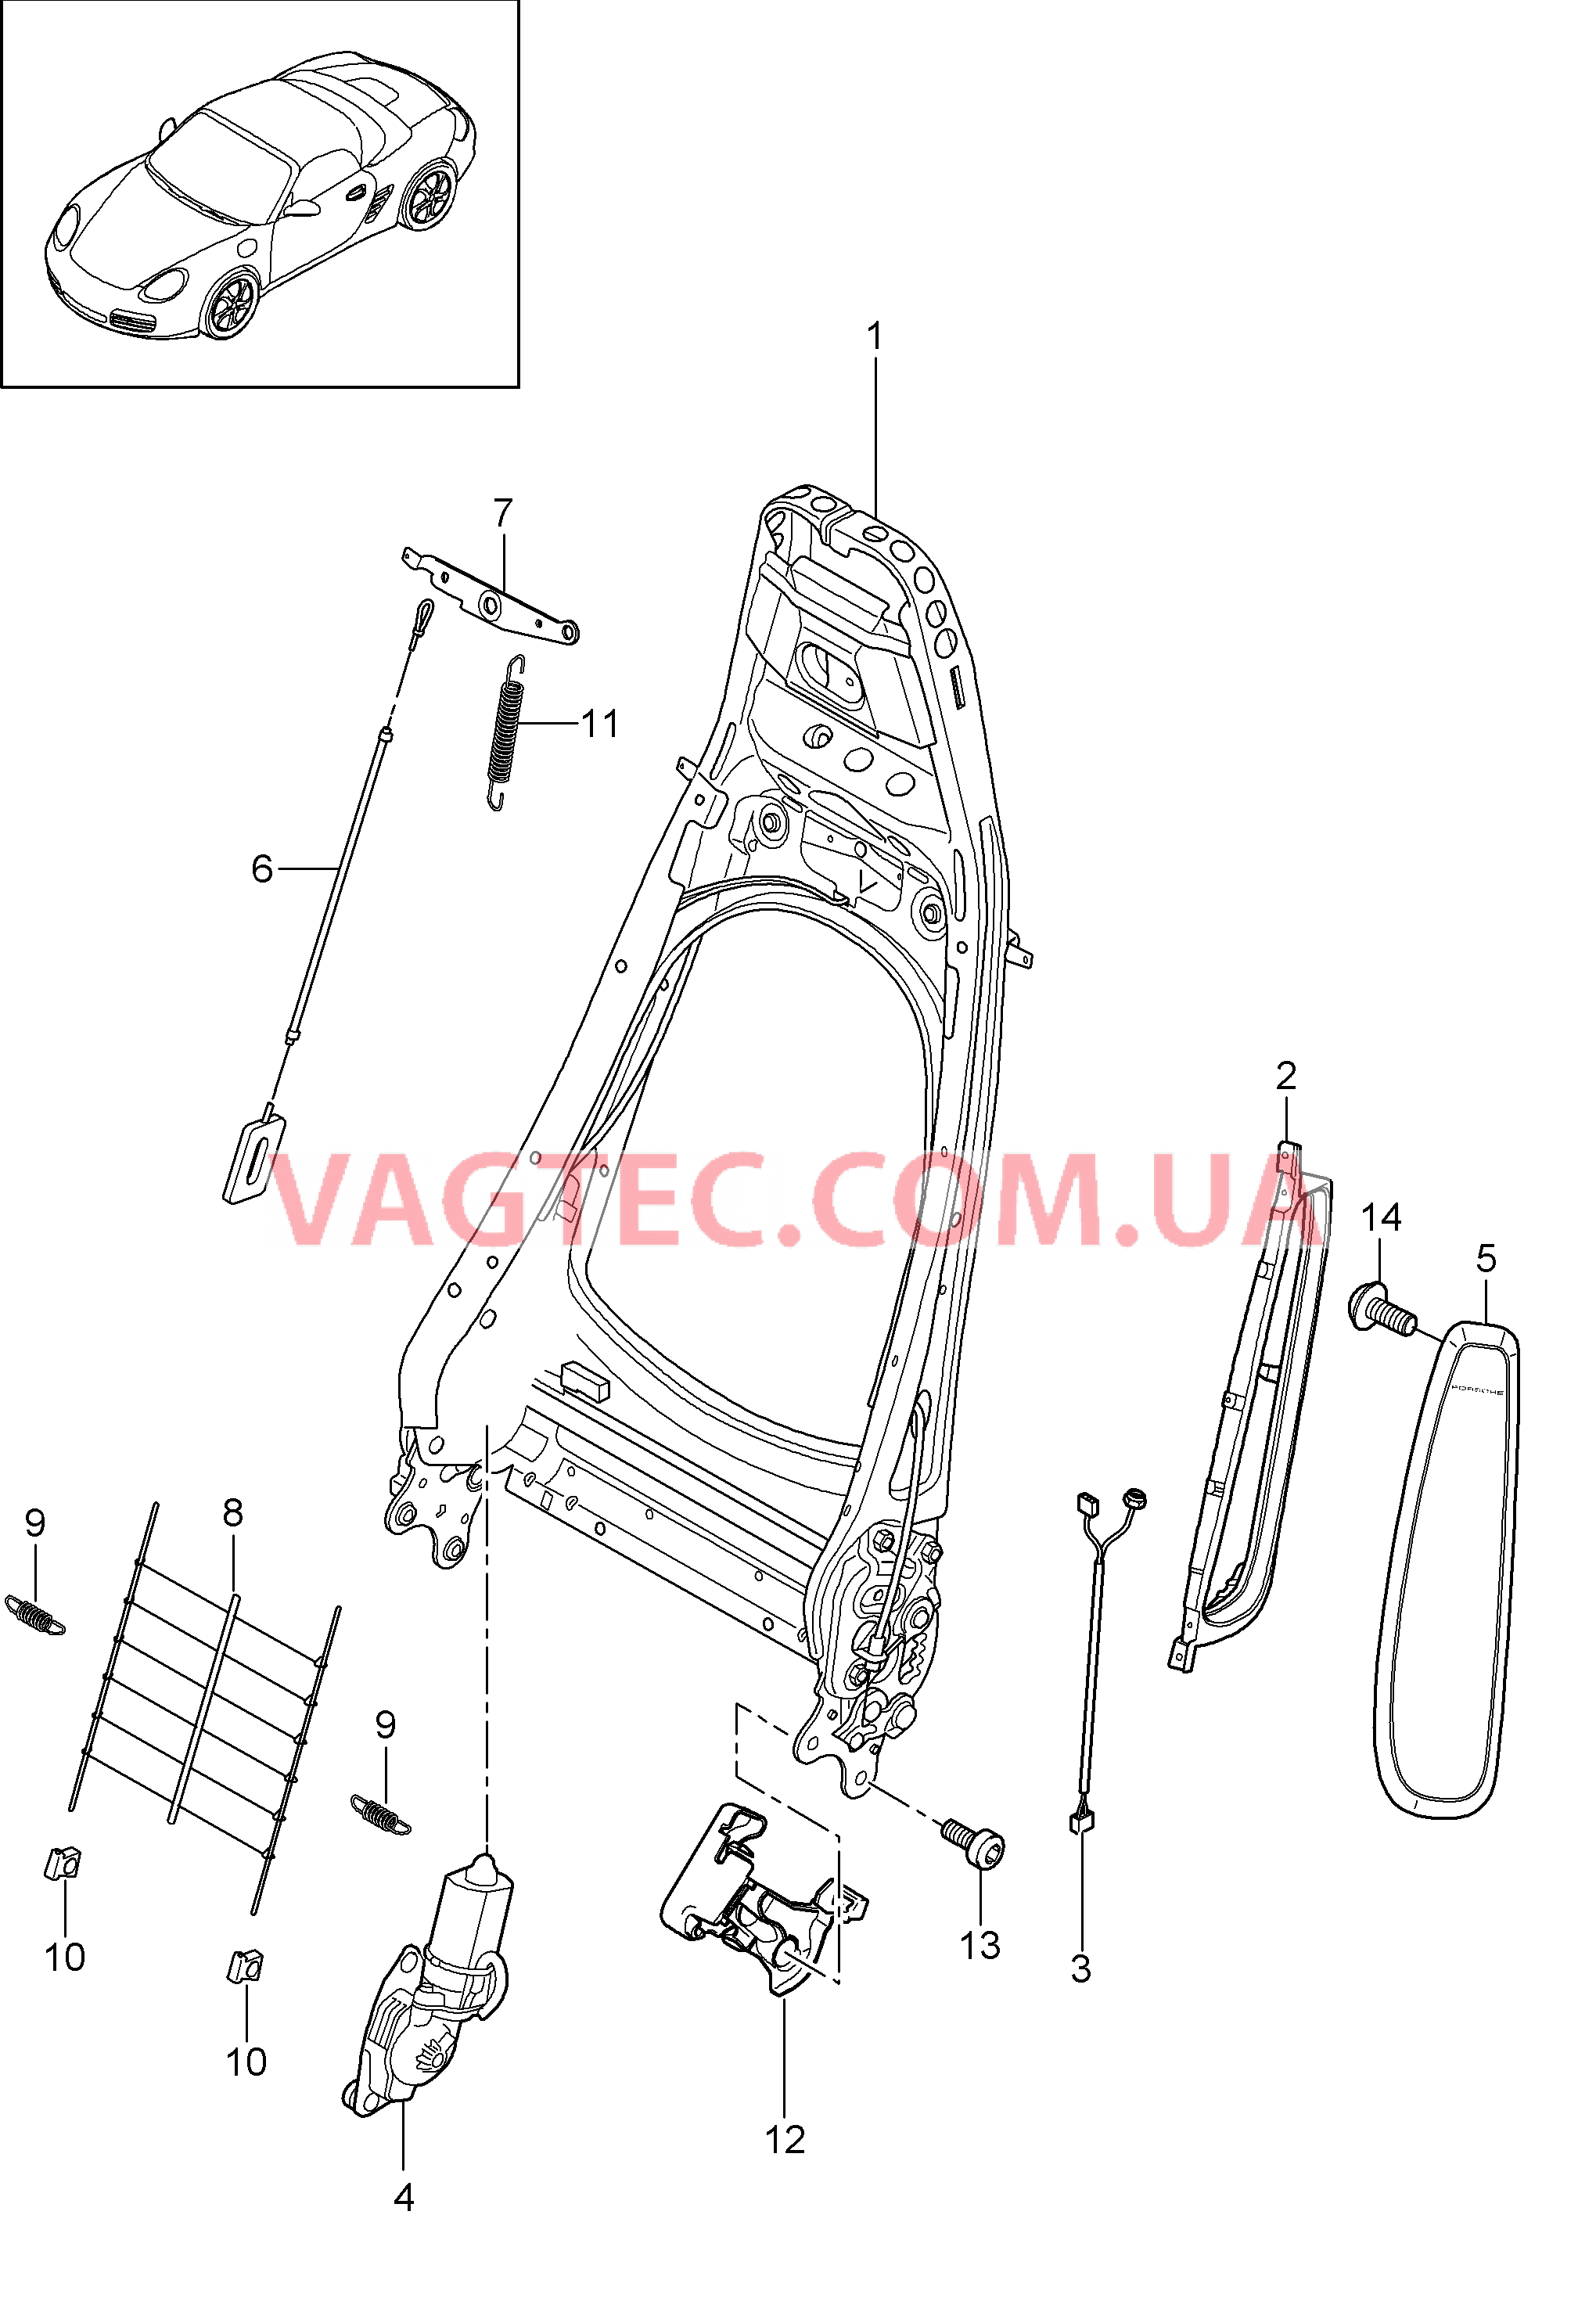 817-006 Каркас спинки, Серийное сиденье, Сиденье KOMFORT
						
						I369/370, I437/438 для PORSCHE Boxster 2009-2012